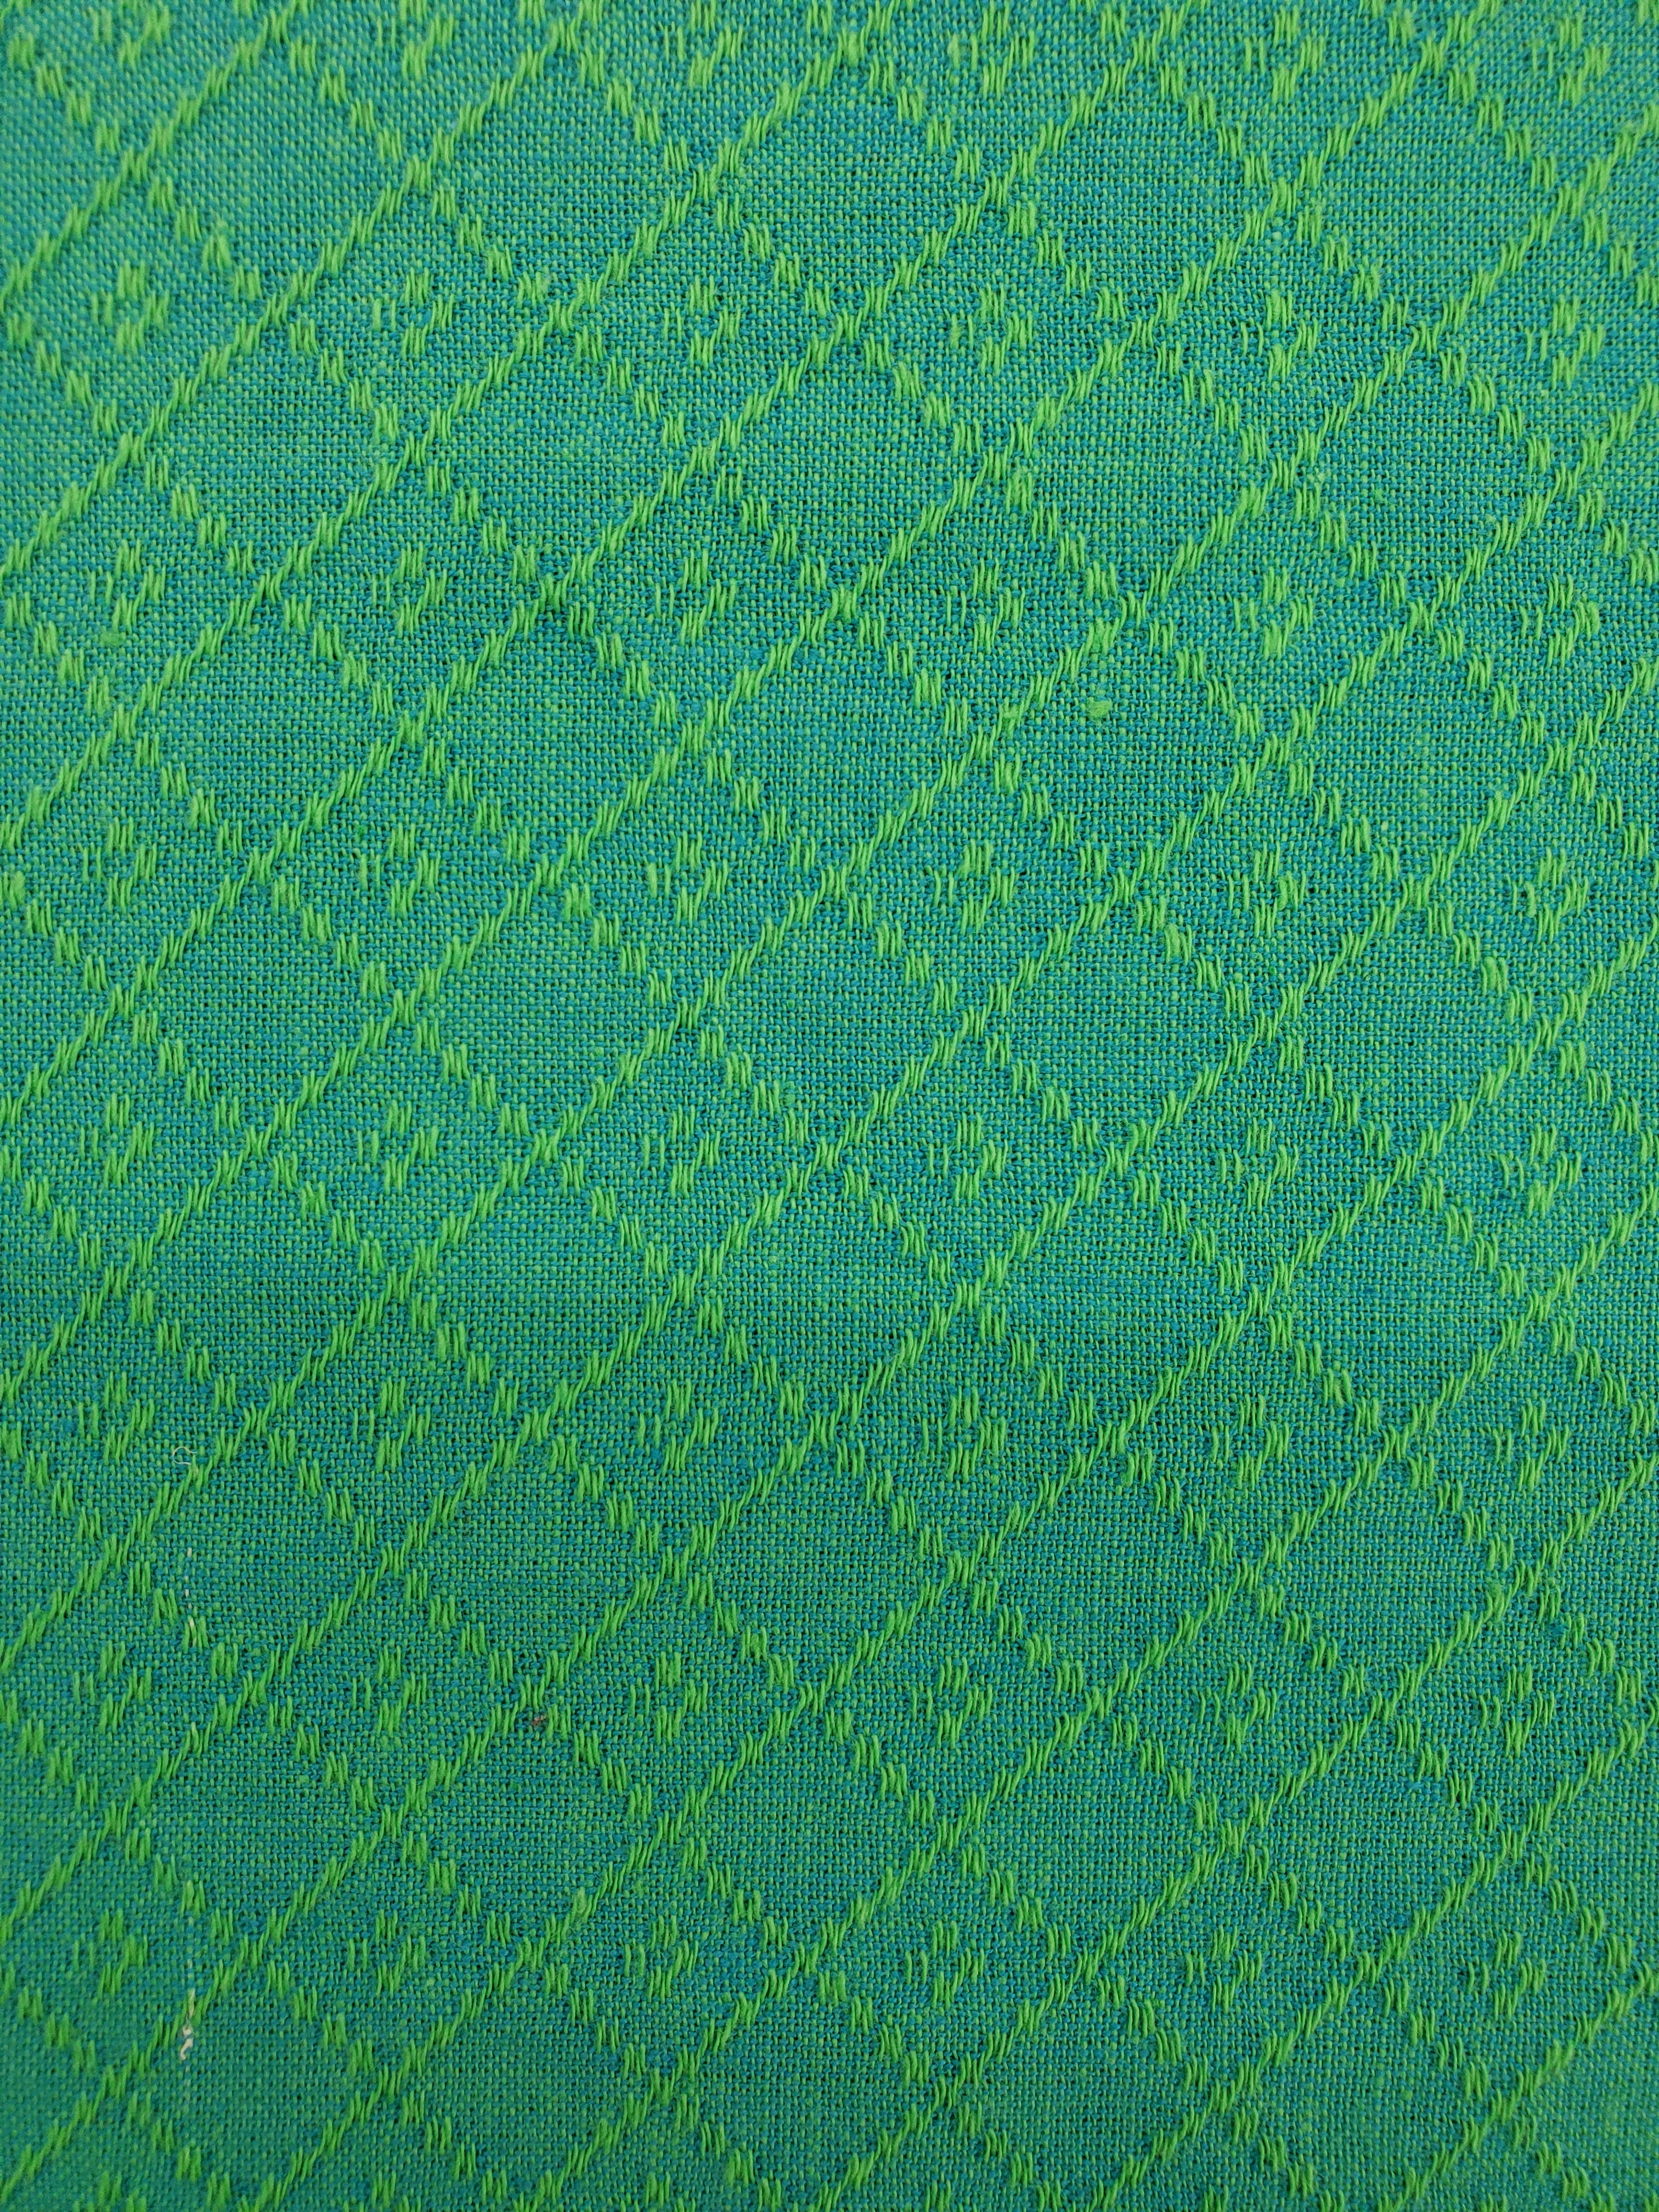 Diamond Textiles - Nikko III - 4220